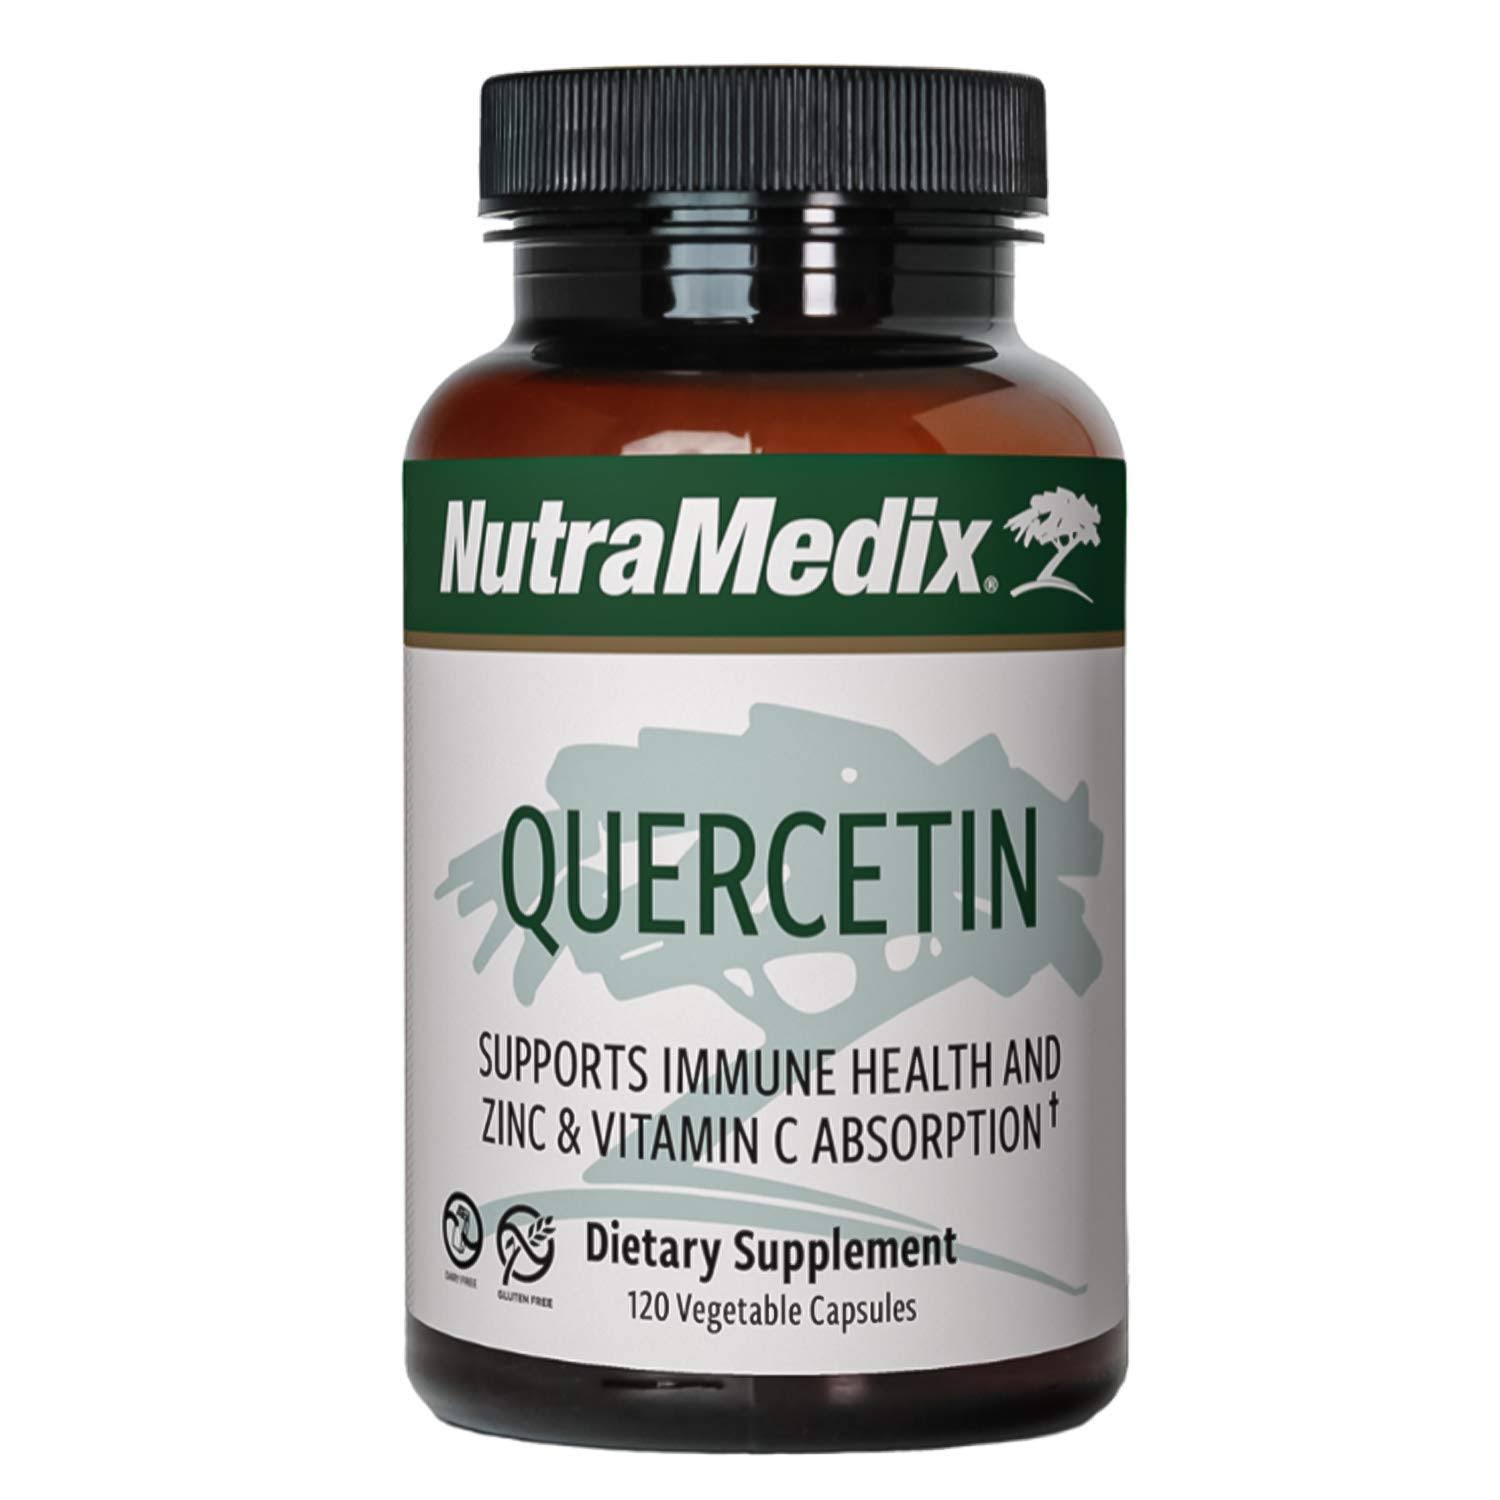 NutraMedix Quercetin - 120 Vegetable Capsules